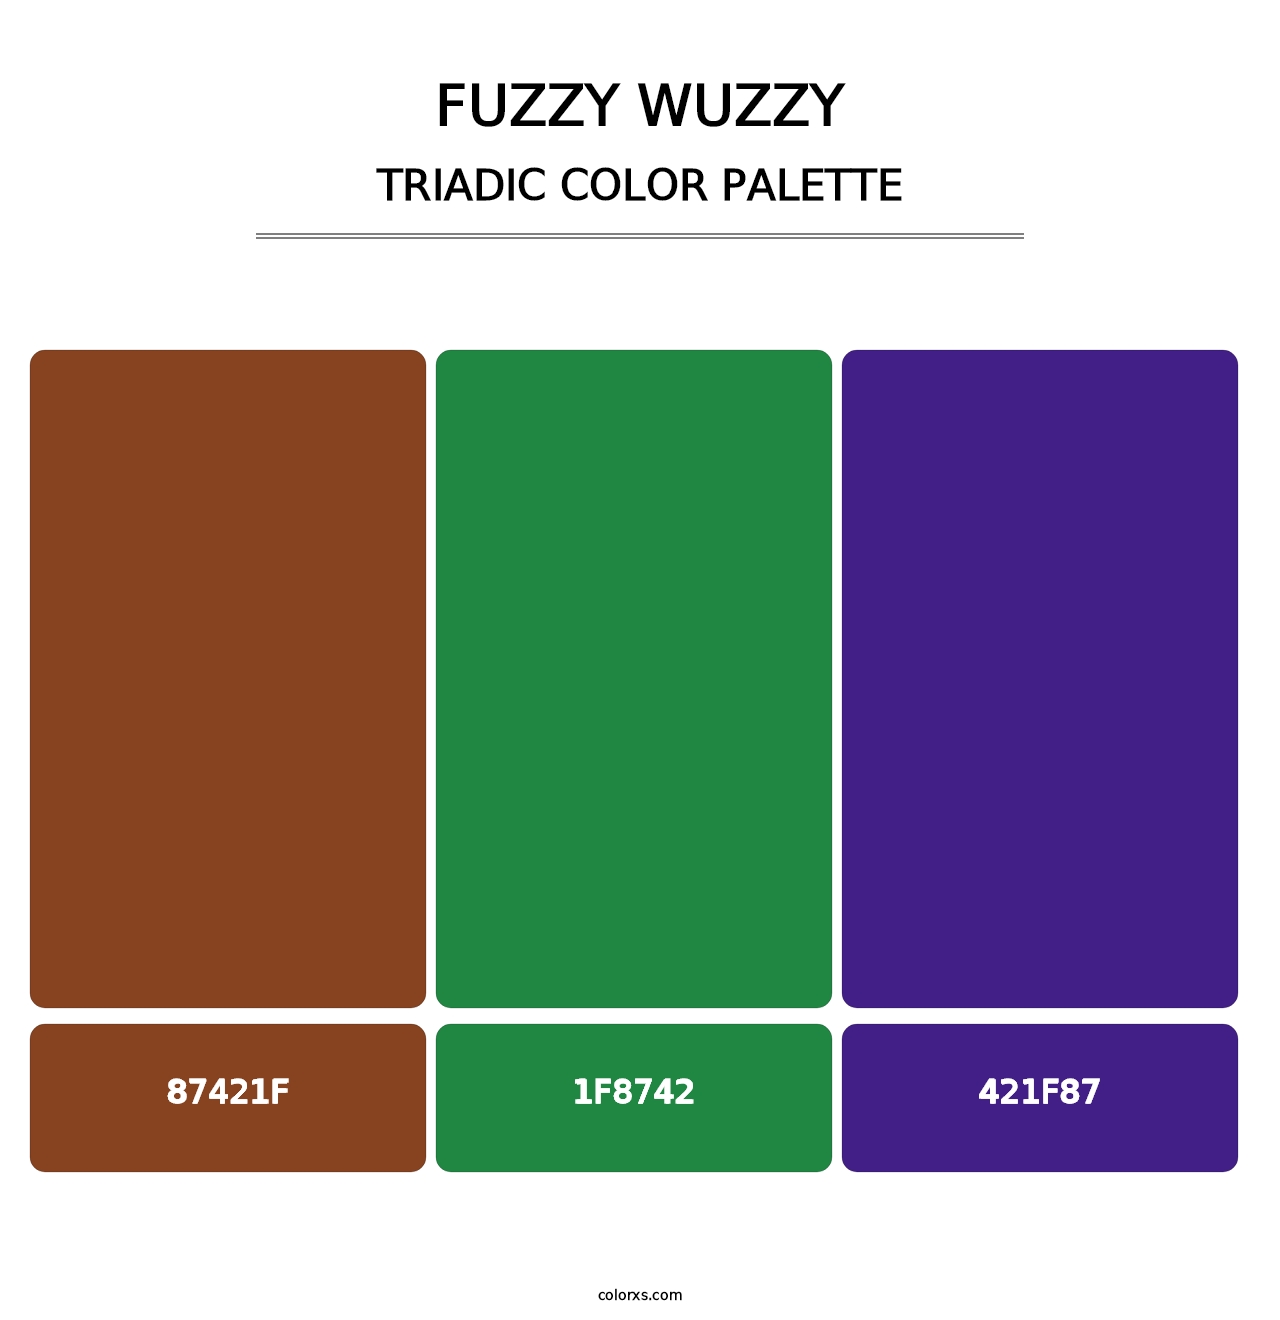 Fuzzy Wuzzy - Triadic Color Palette